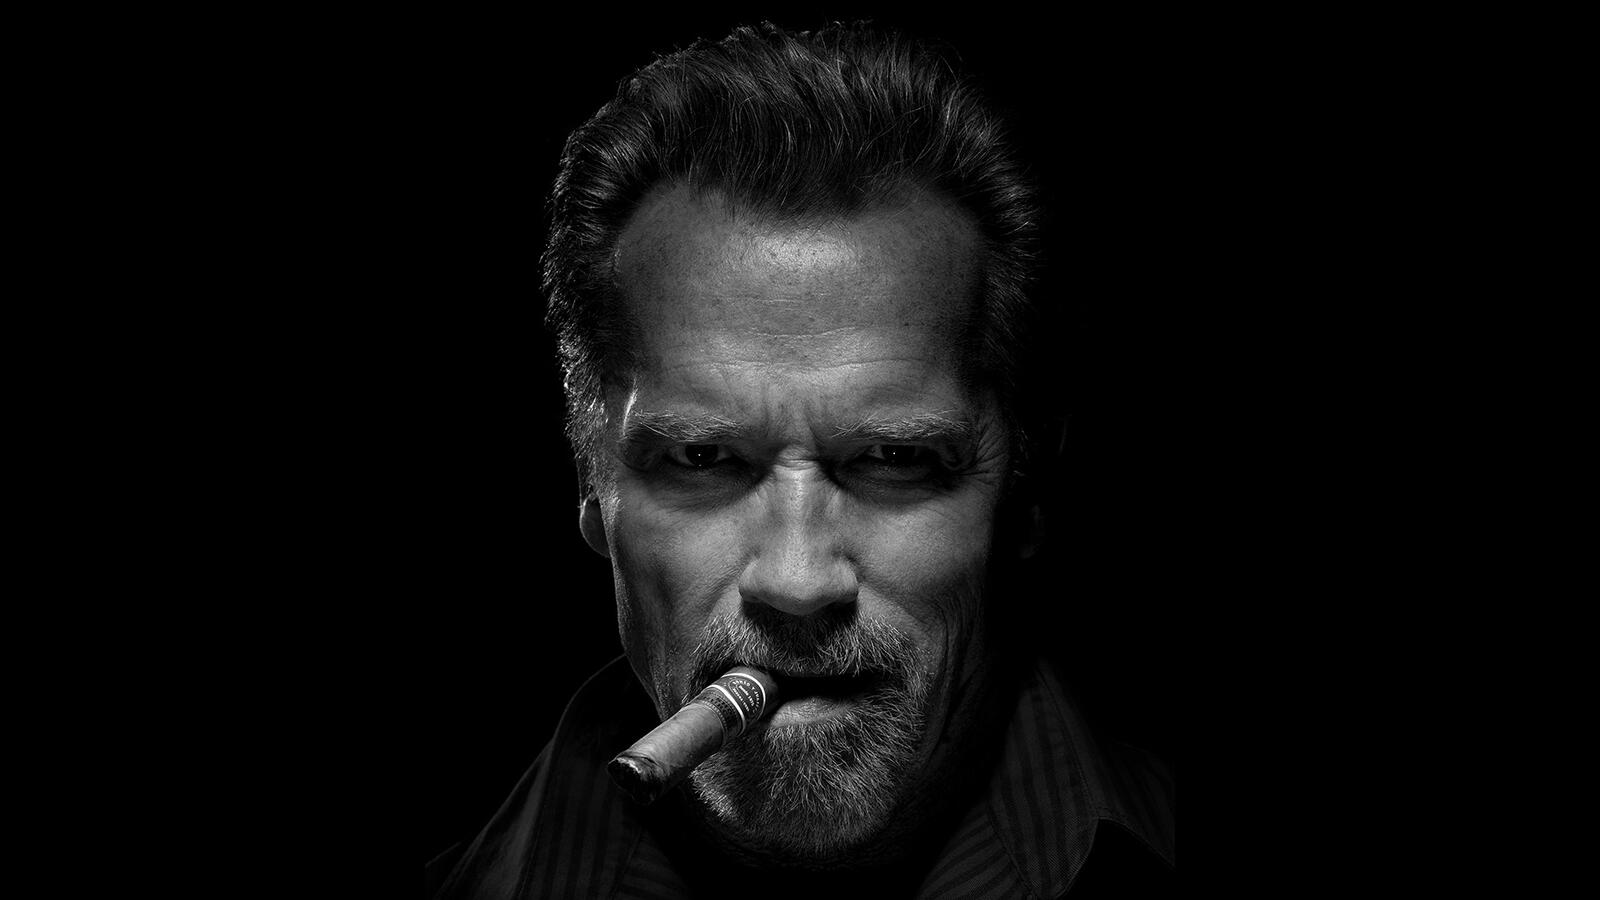 Бесплатное фото Арнольд Шварценеггер с сигарой на черном фоне